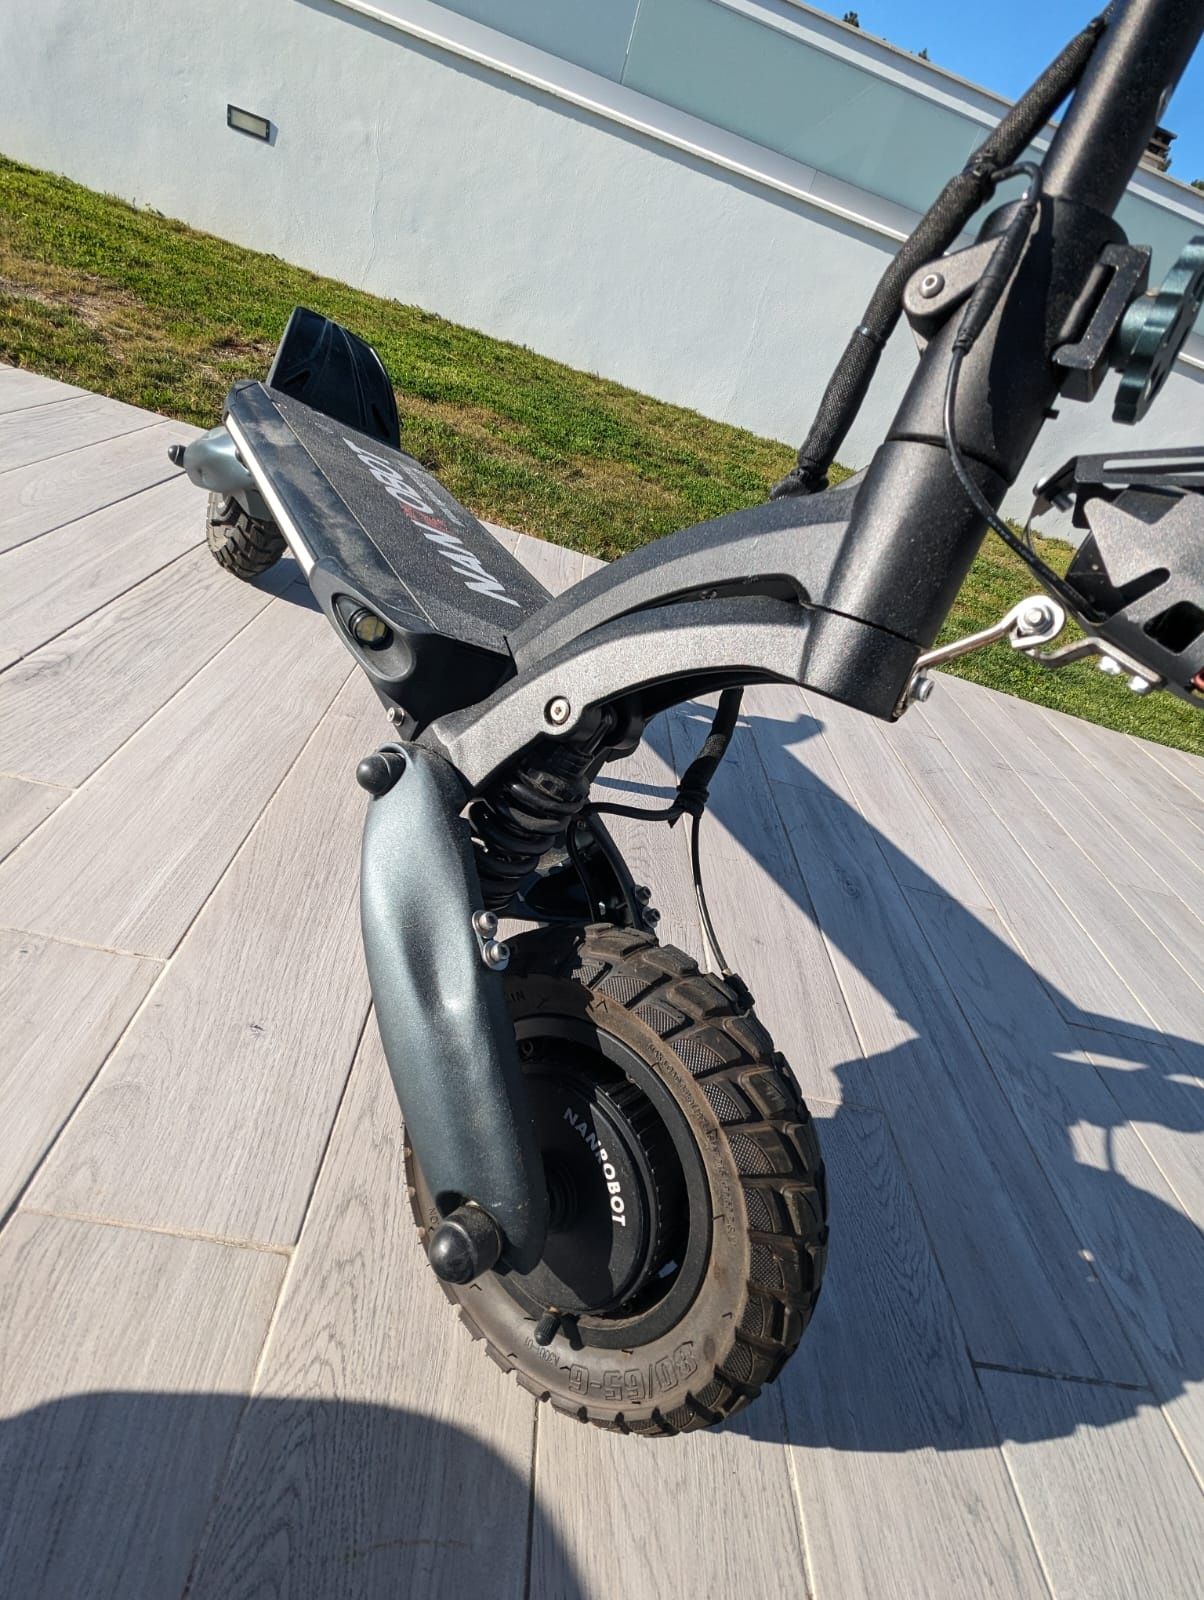 Trotinete Elétrica Nanrobot d6+ 2.0 - Vendo ou troco (bicicleta)